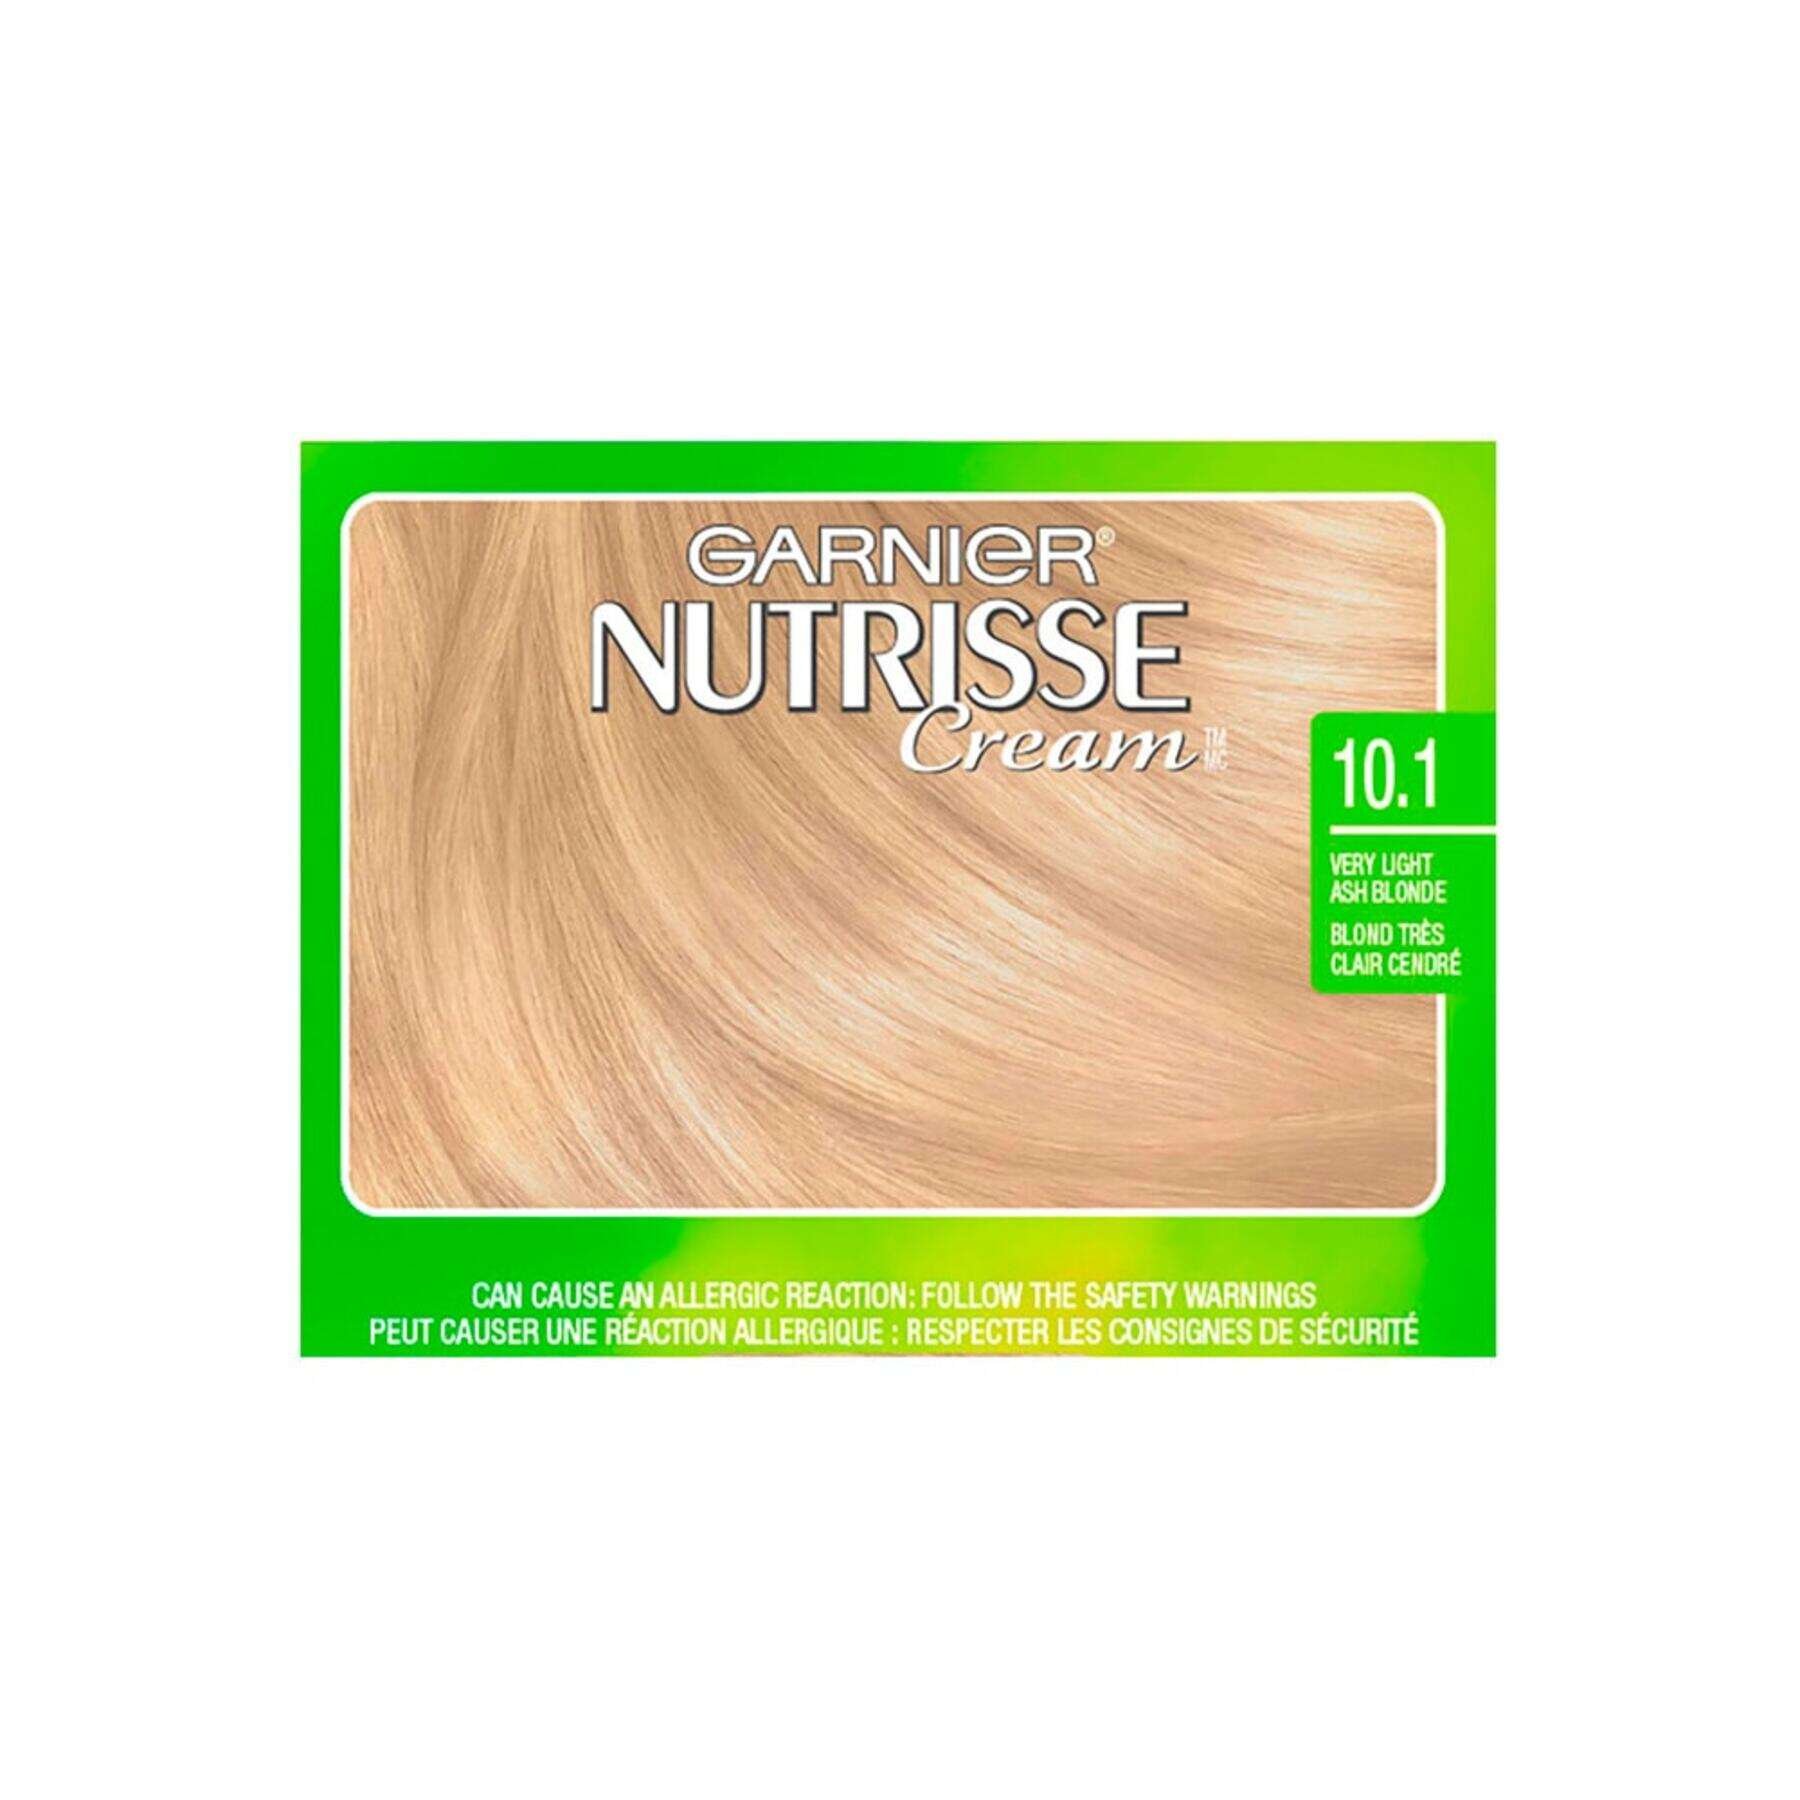 garnier hair dye nutrisse cream 101 very light ash blonde 0603084494927 swatch